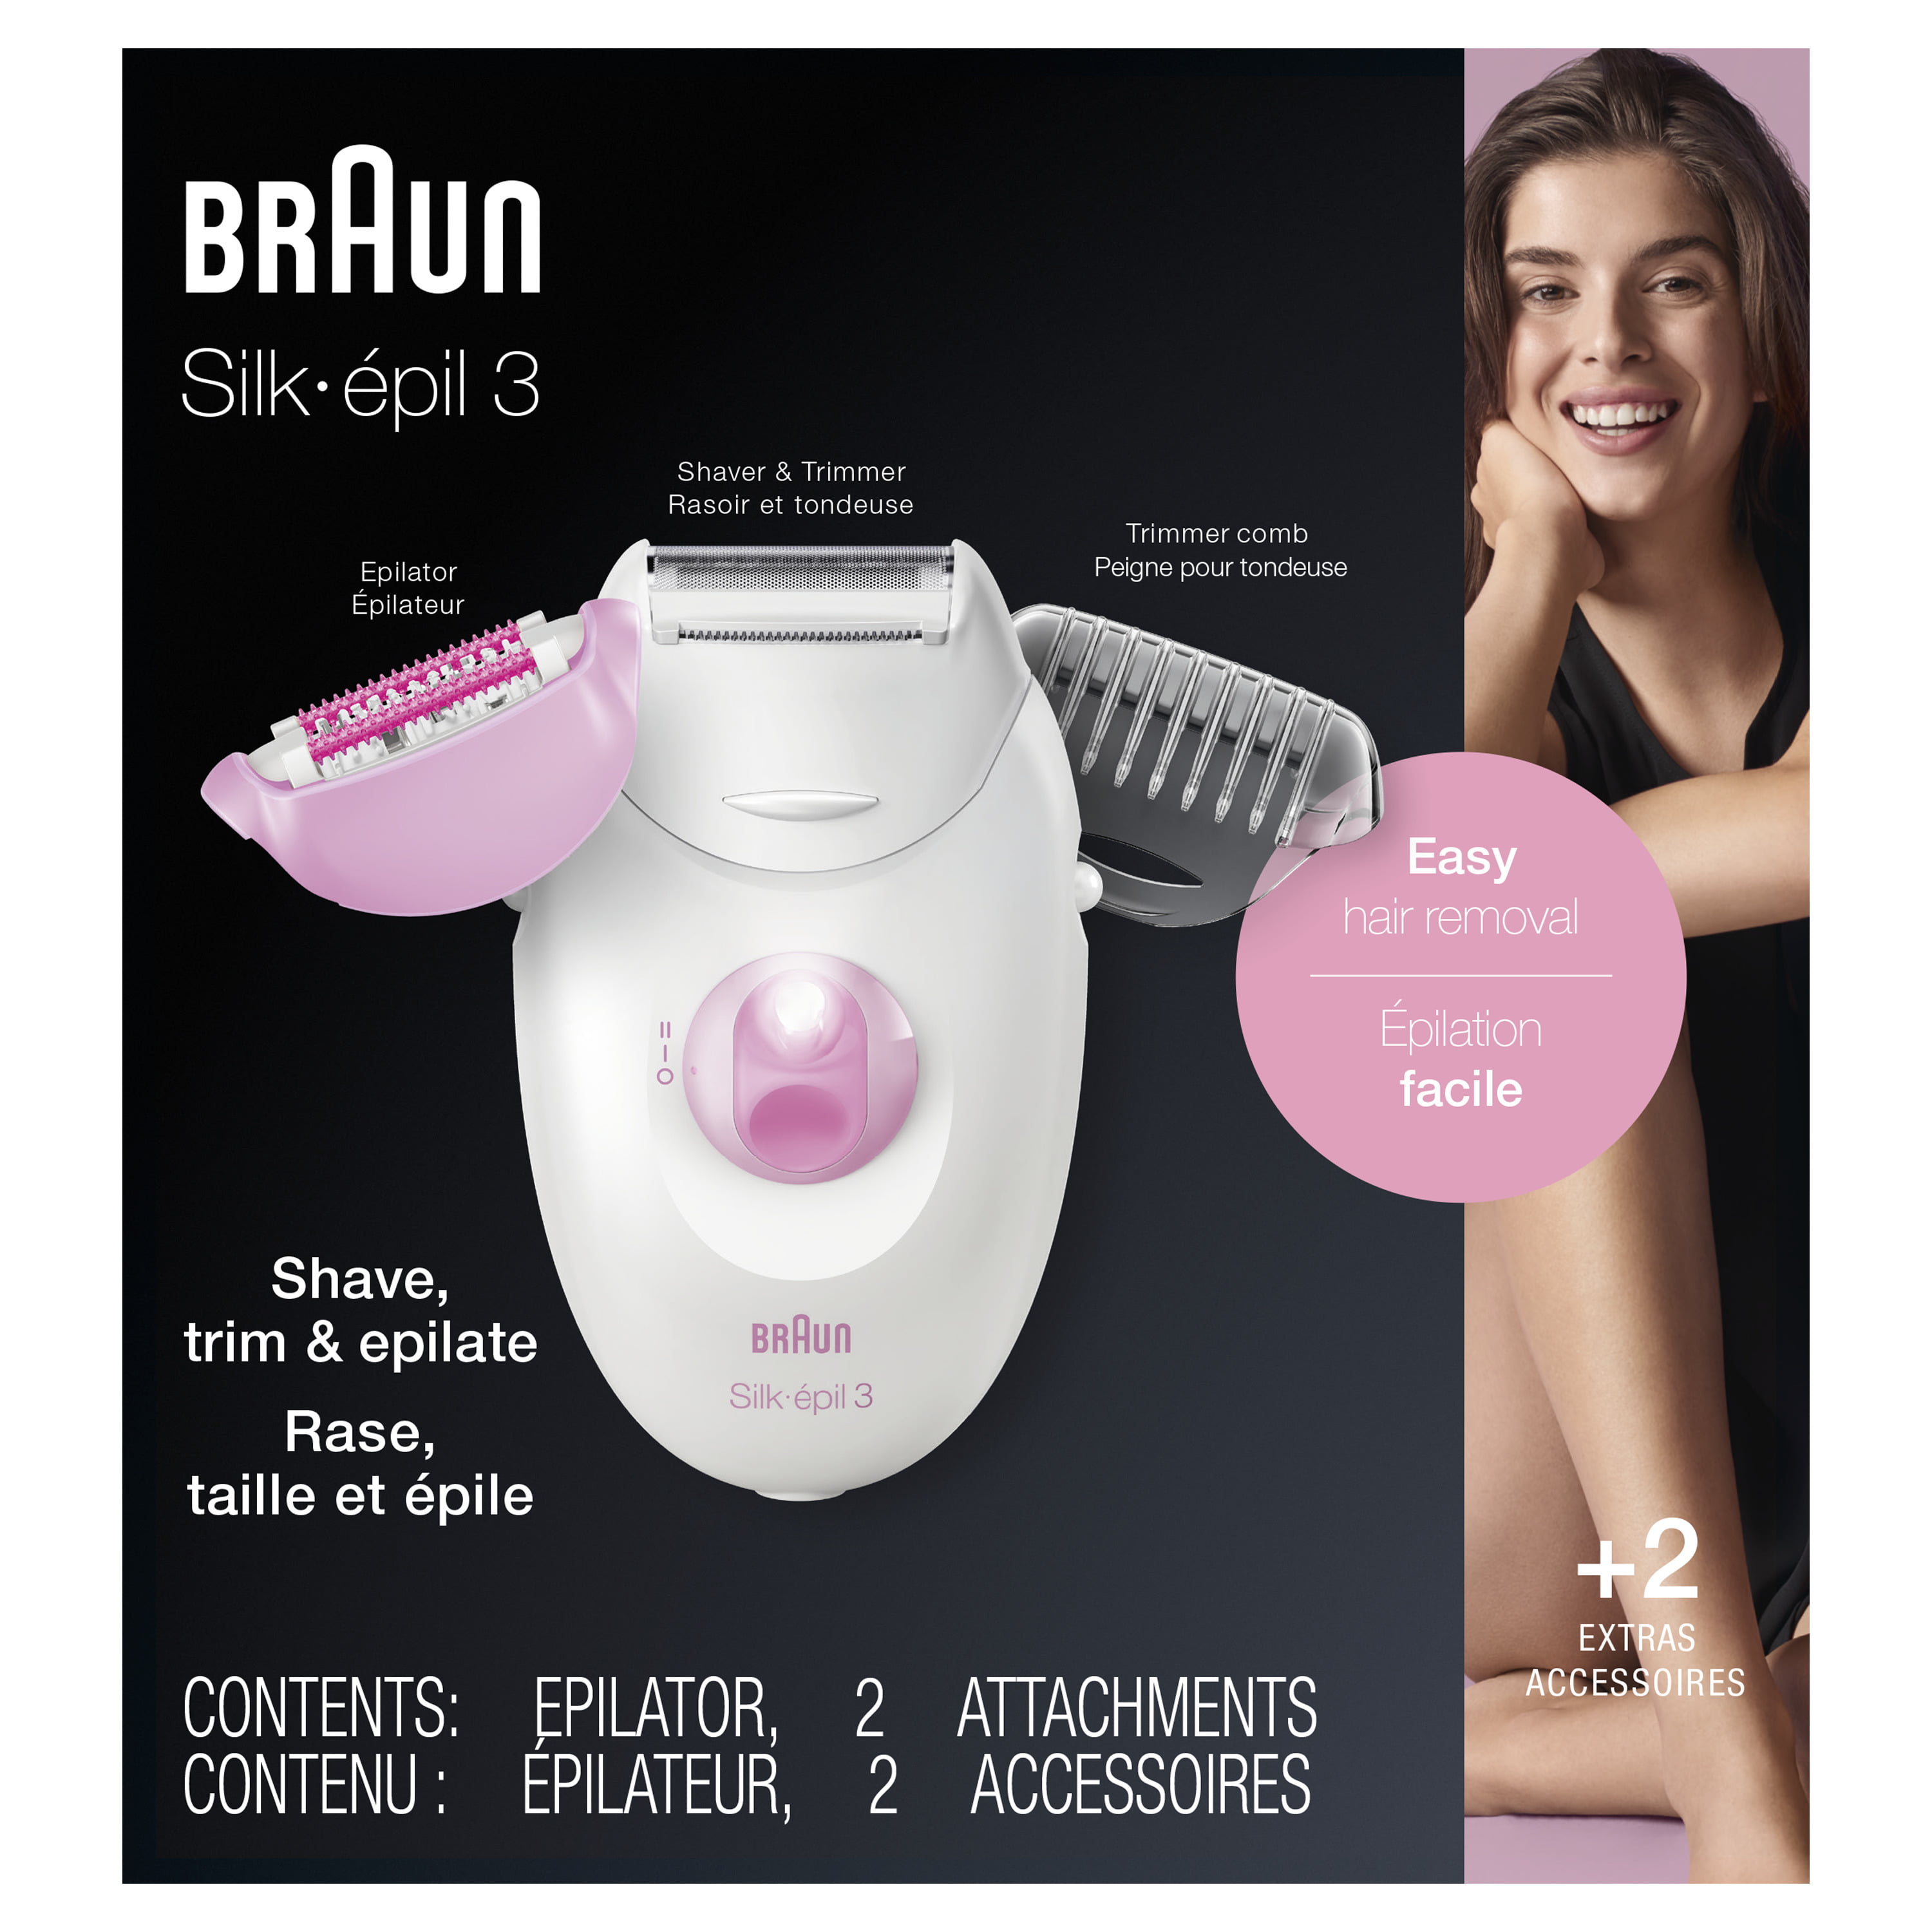 Bekwaamheid vasteland roddel Braun Silk-epil 3 3-270, Epilator for Women for Long-Lasting Hair Removal,  White/Pink - Walmart.com